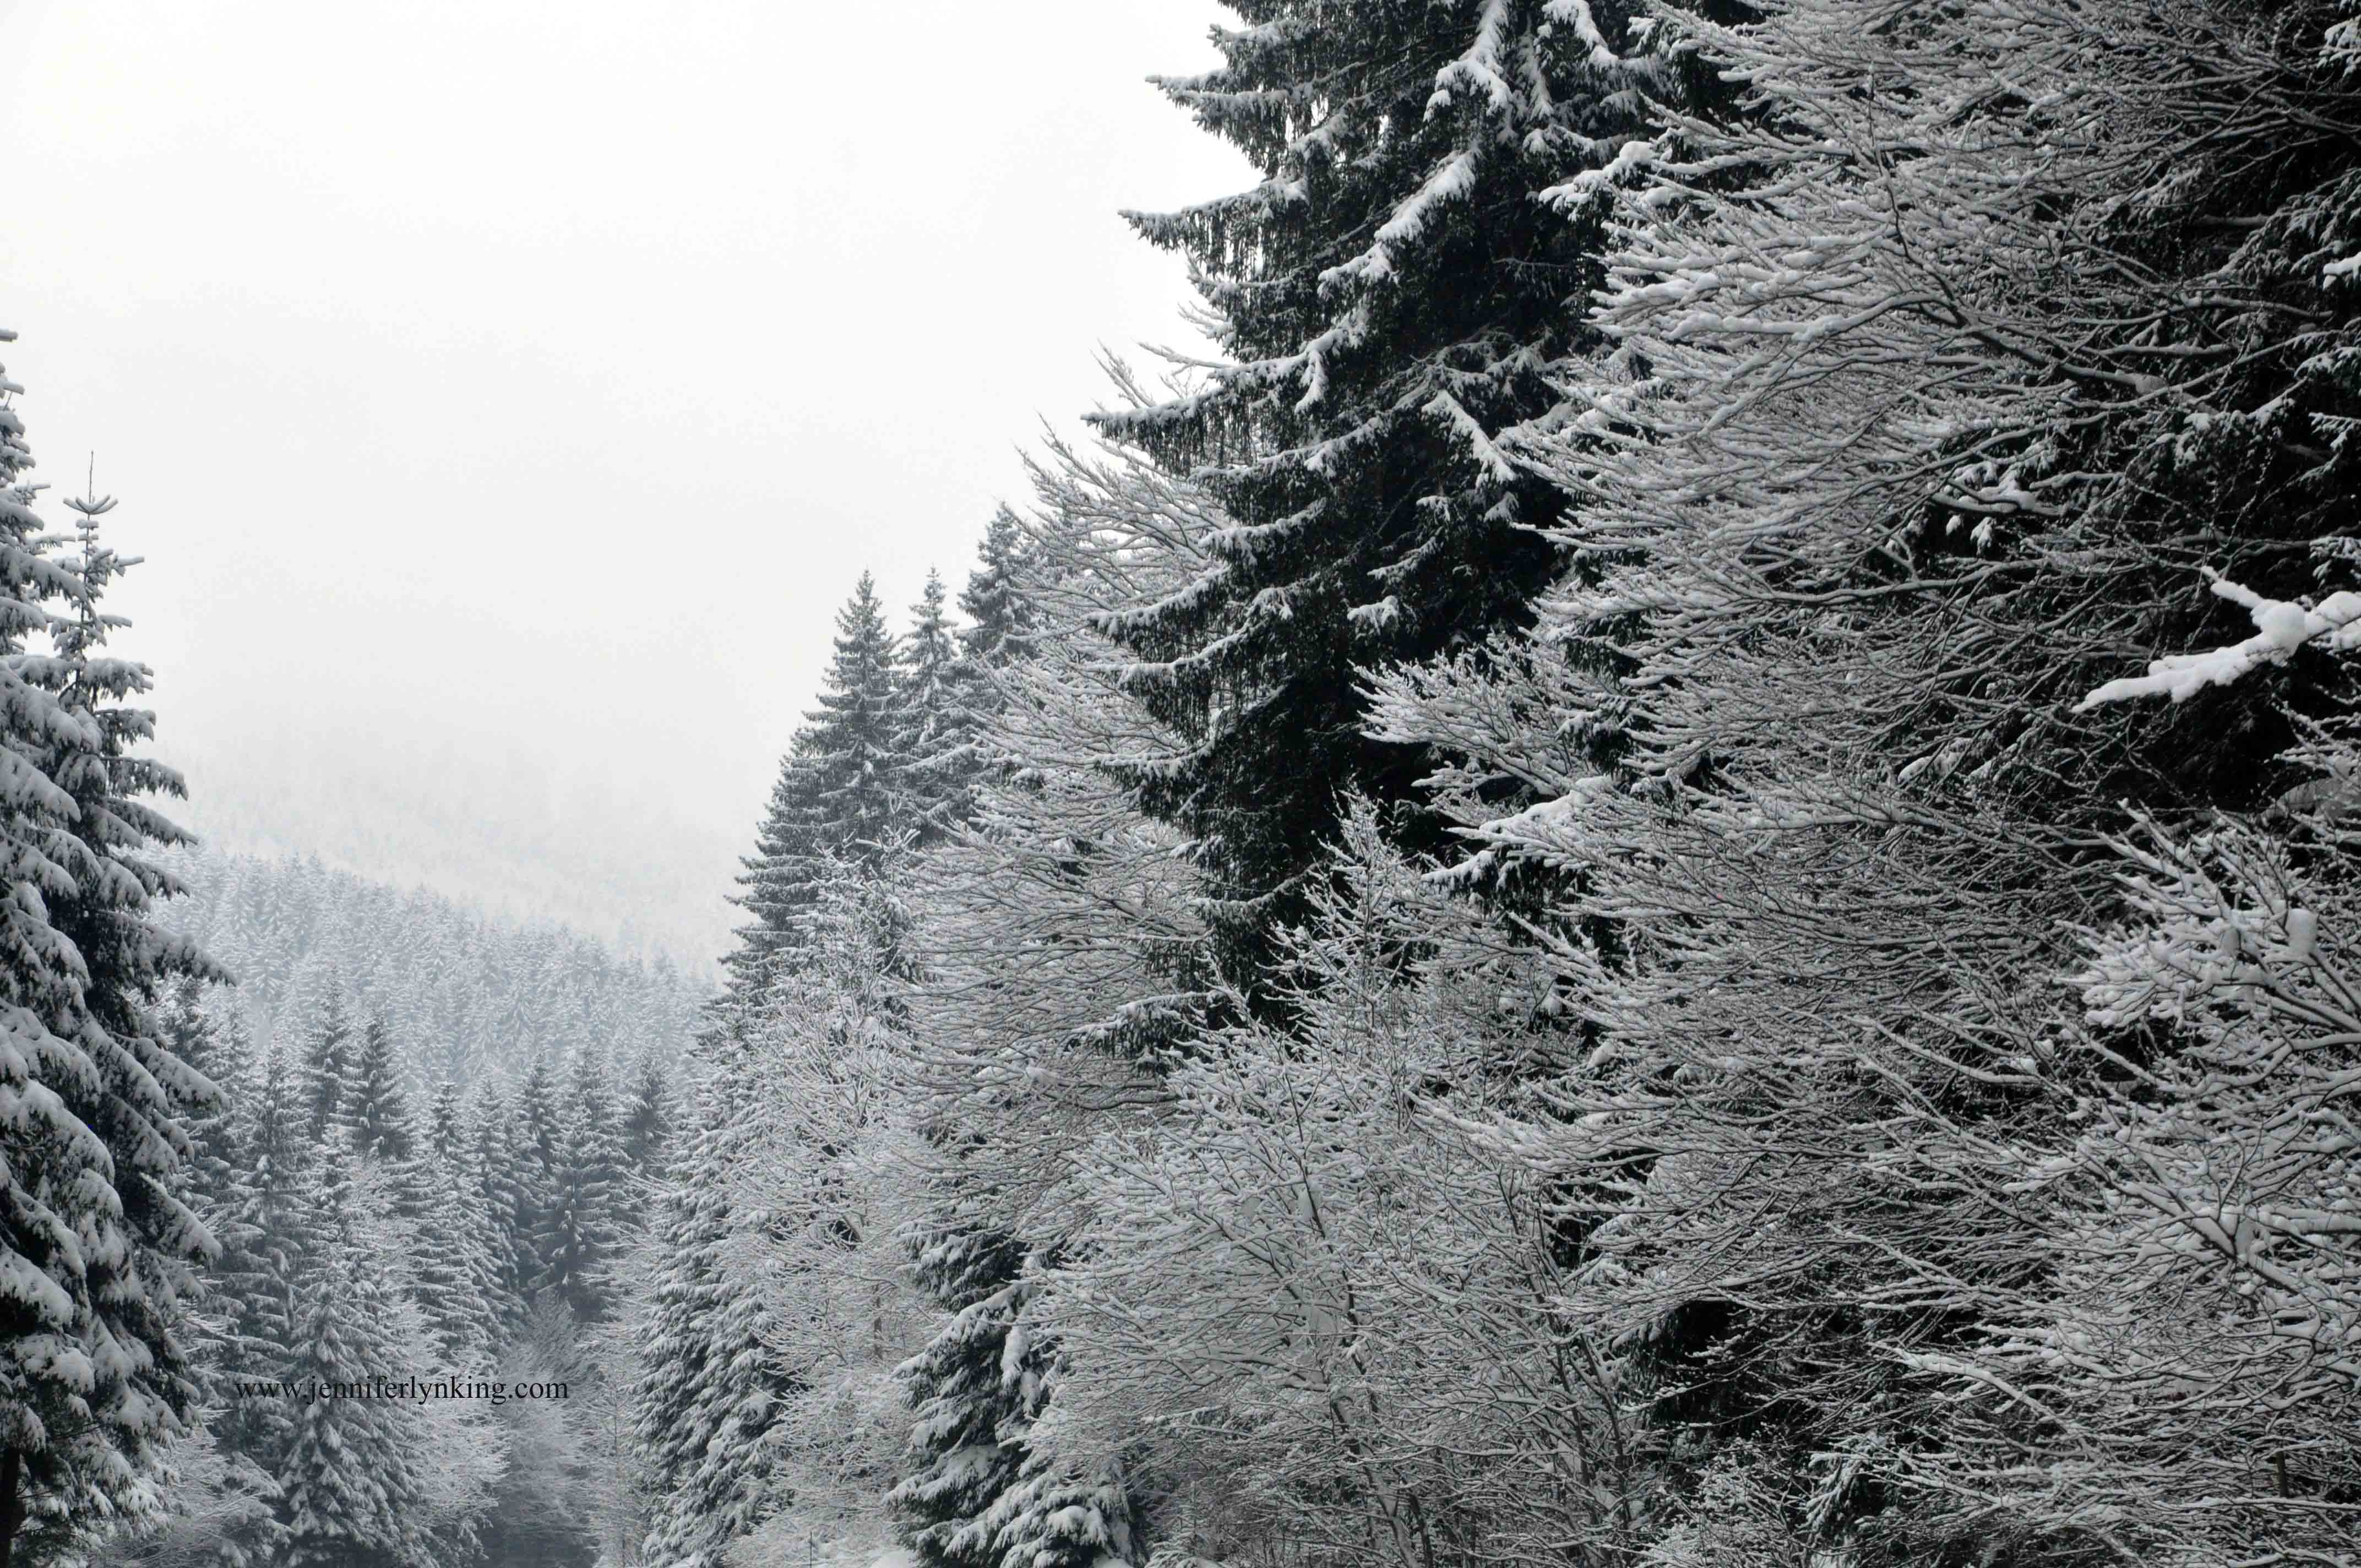 Austrian Alps at Christmas